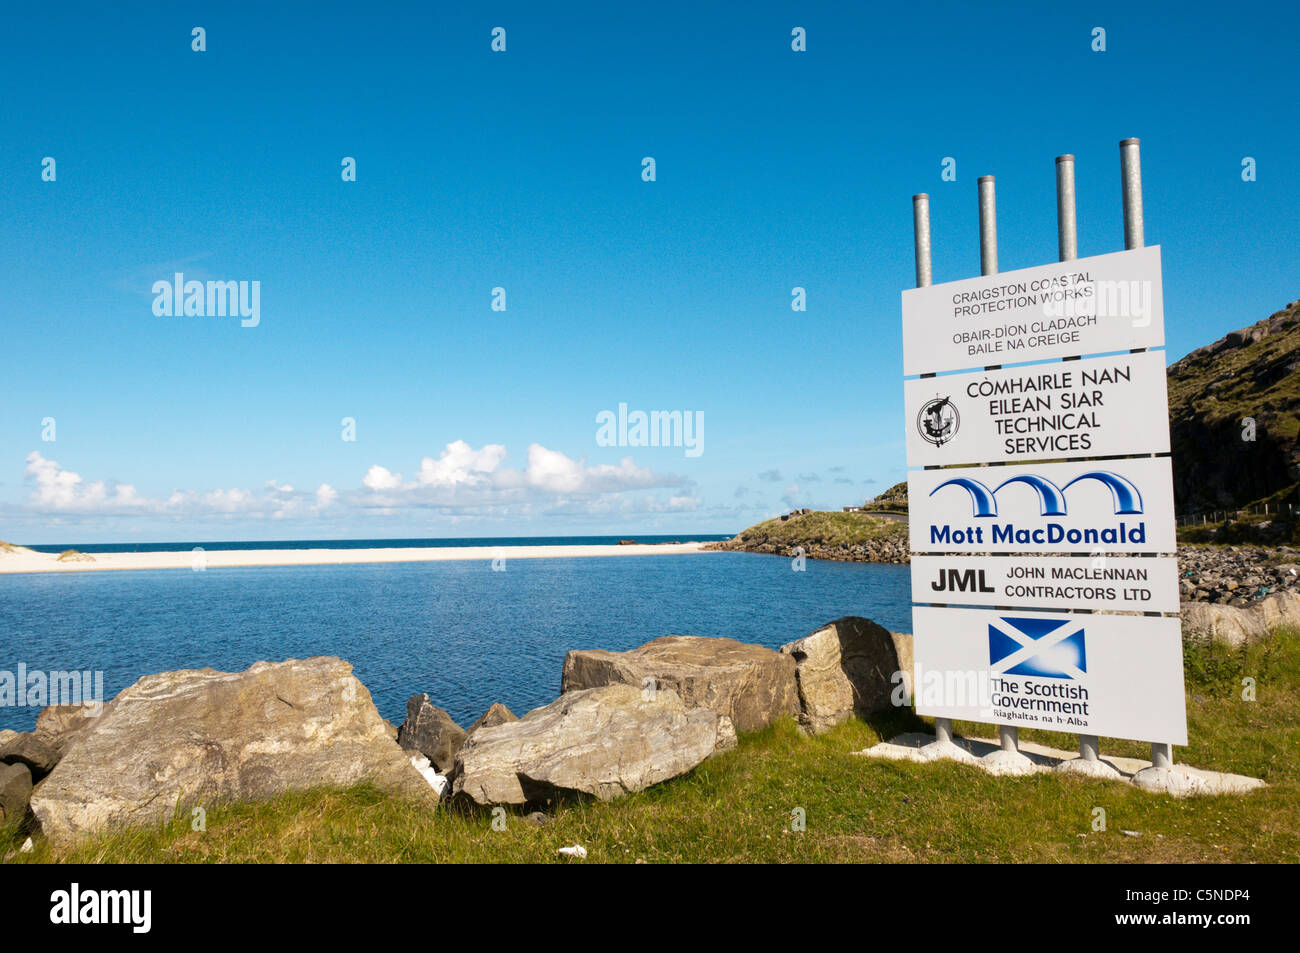 Craigston Küstenschutz arbeitet auf der Isle of Barra in den äußeren Hebriden. Stockfoto